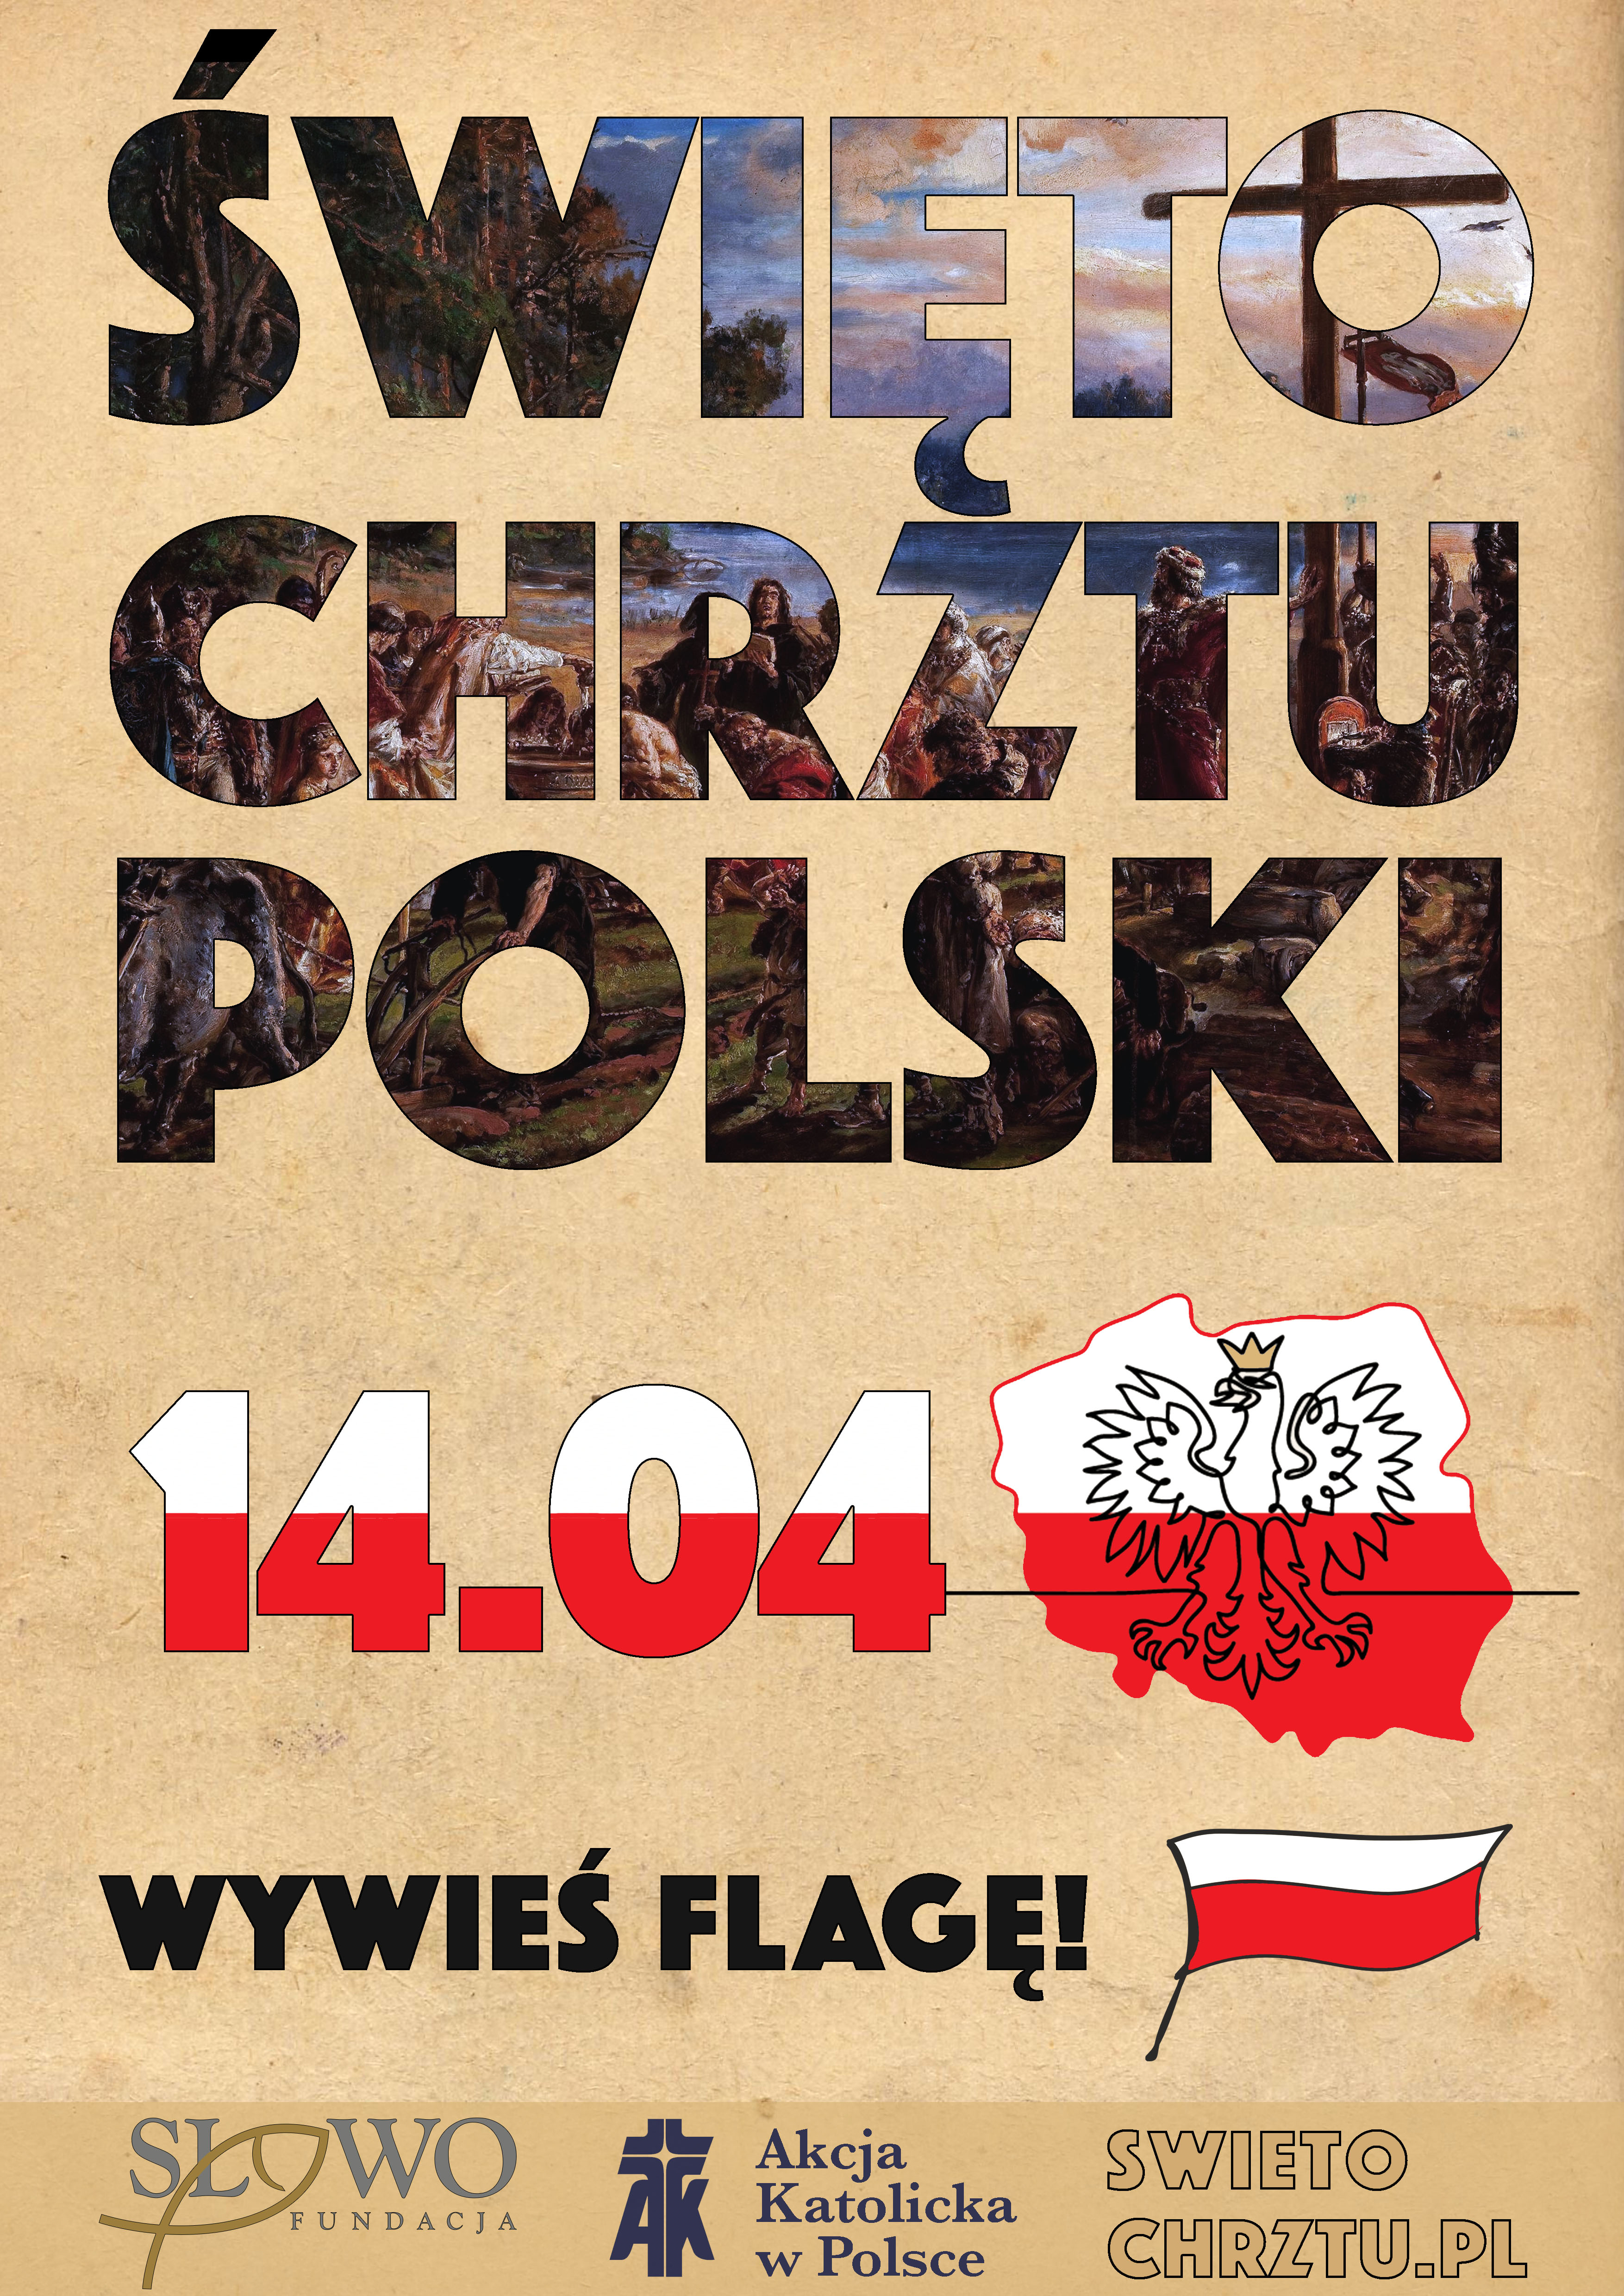 2021 04 14 swieto chrztu Polski1